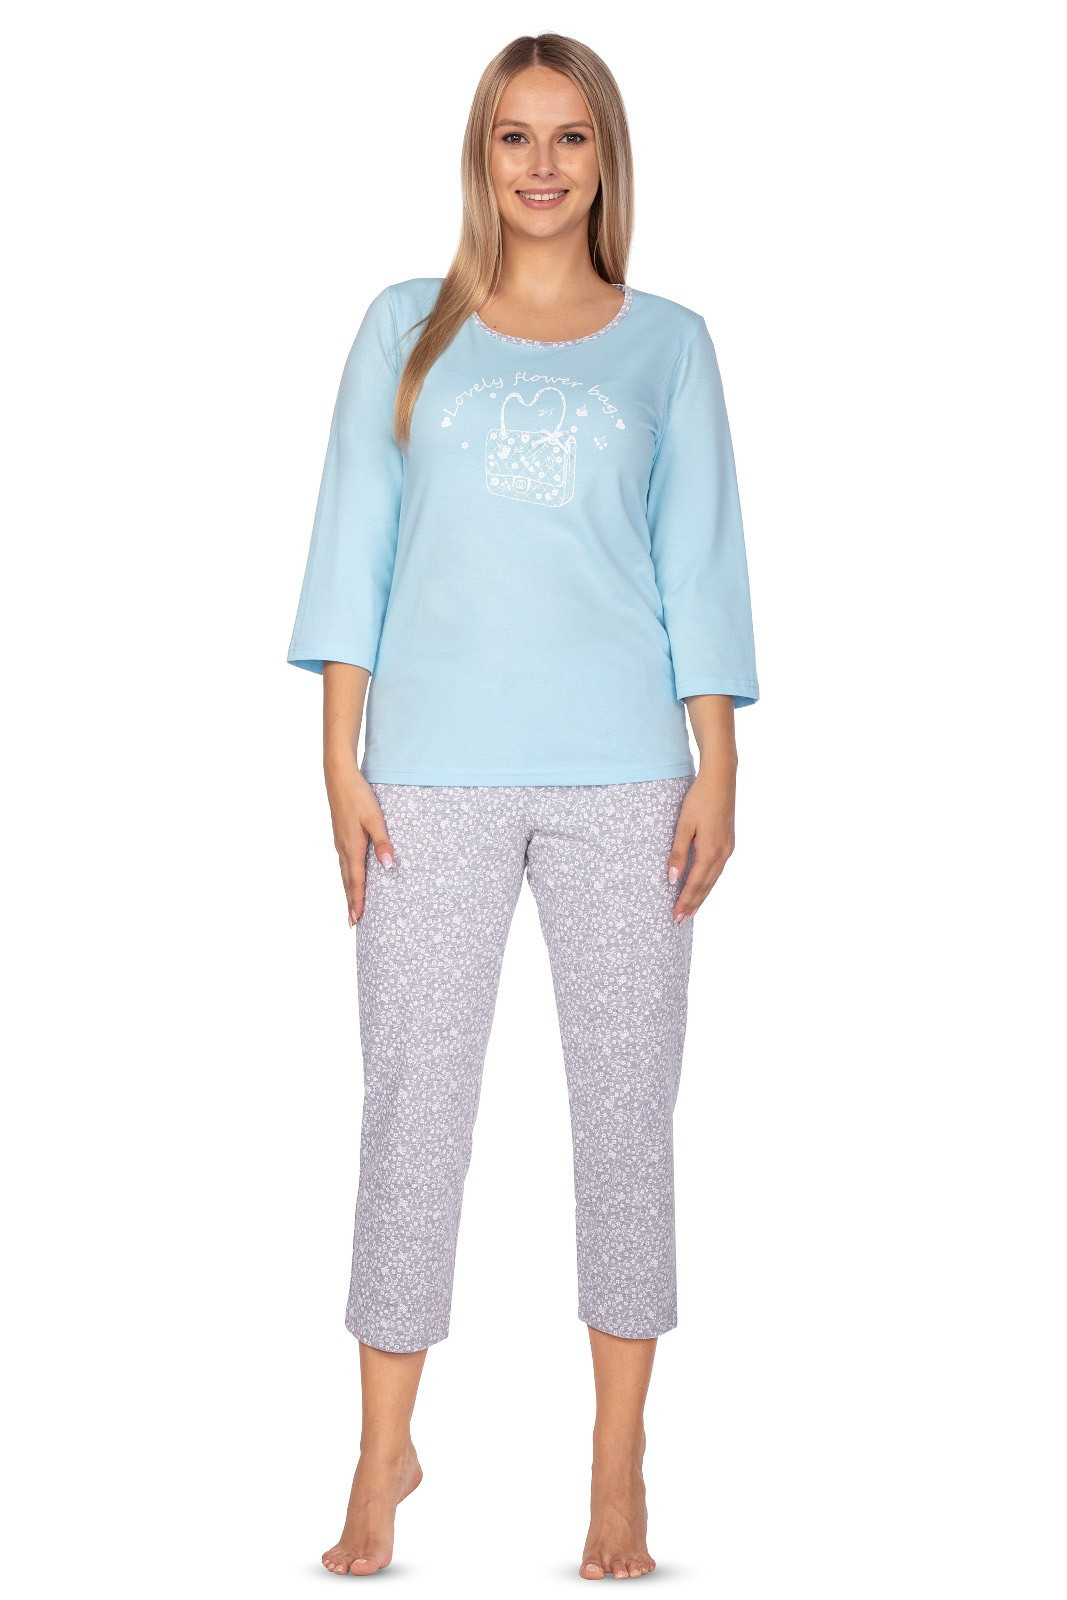 Dámské pyžamo Regina 638 3/4 S-XL modrá XL